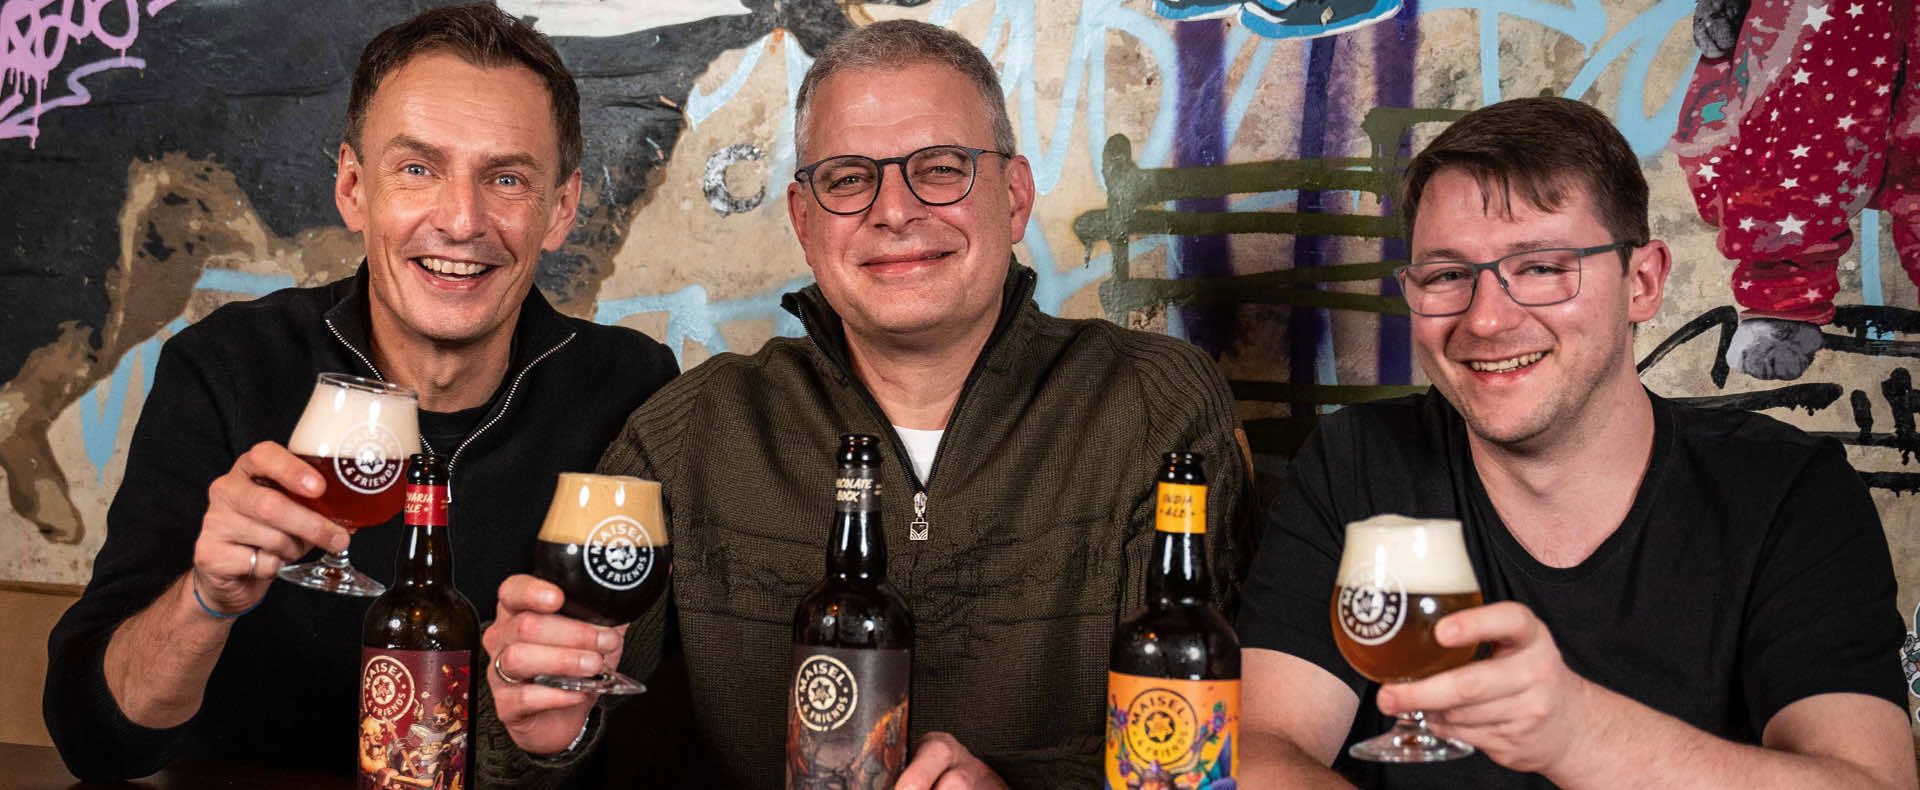 Die Signature Biere von Maisel & Friends mit ihren drei Bier-Paten Jeff, Marc und Markus